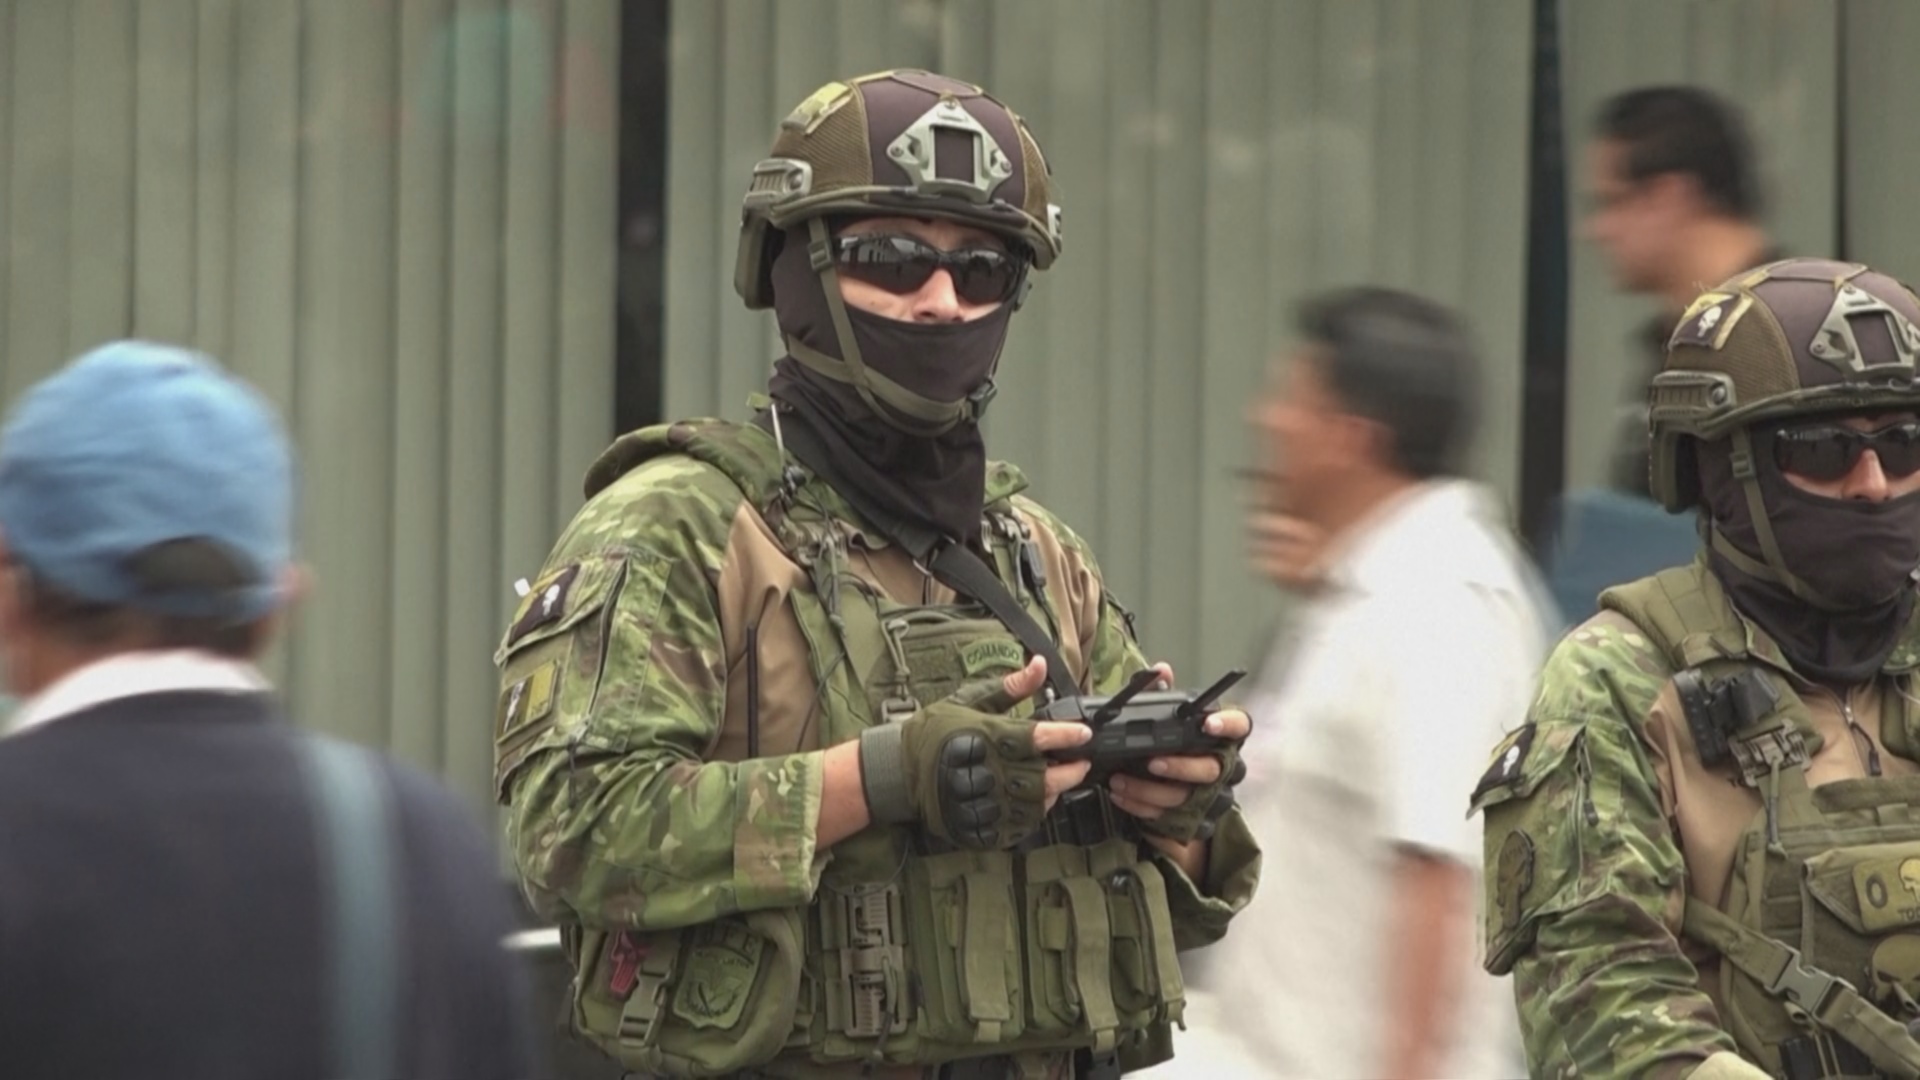 Власти Эквадора объявили войну преступным бандам после серии нападений